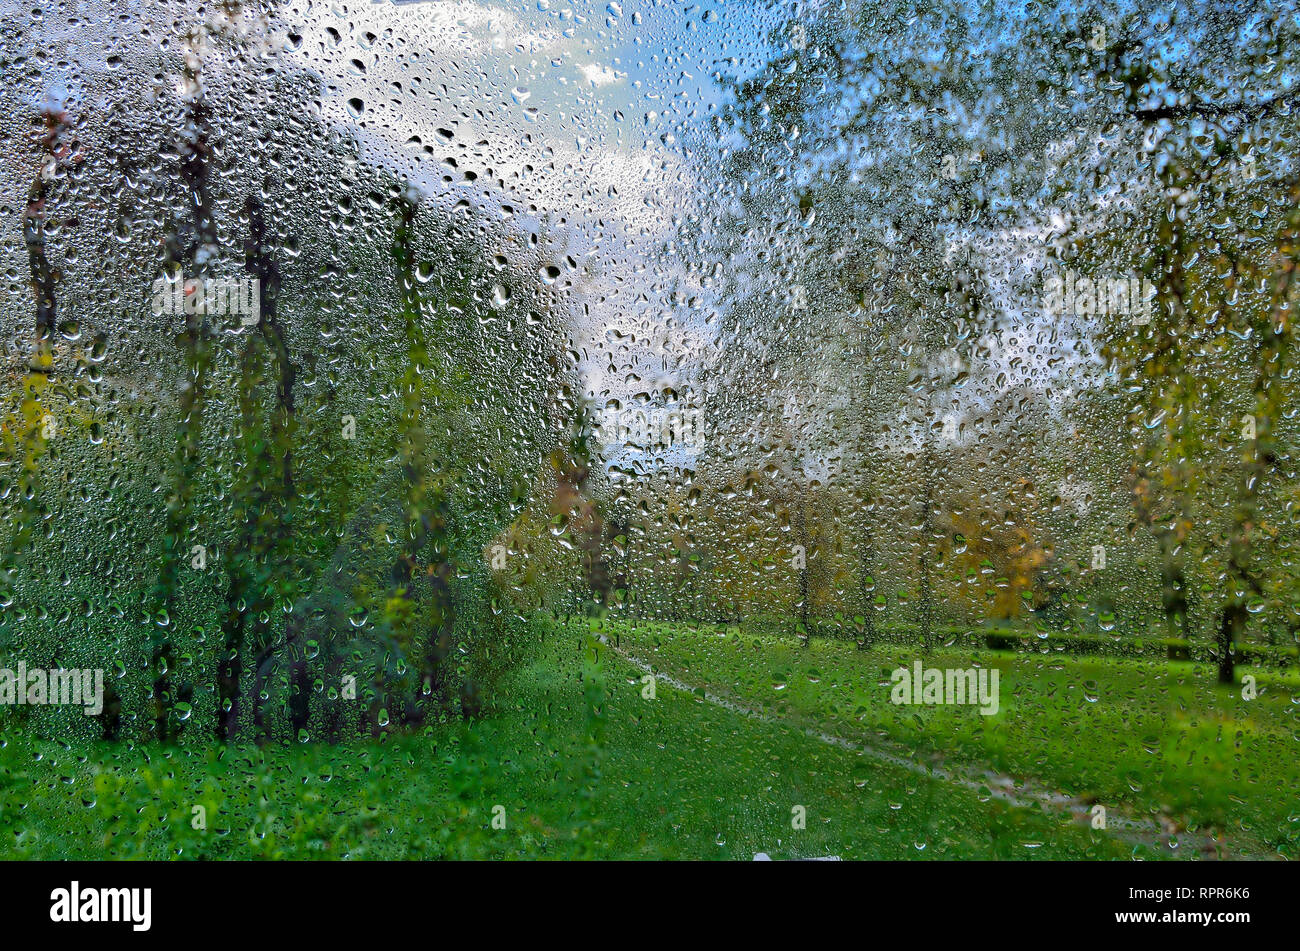 Helle, farbenfrohe Herbst verschwommenen Landschaft im City Park mit nassen Laub nach Regen durch nasses Fenster Glas mit Regentropfen. Regnerischen herbst Wetter und Stockfoto